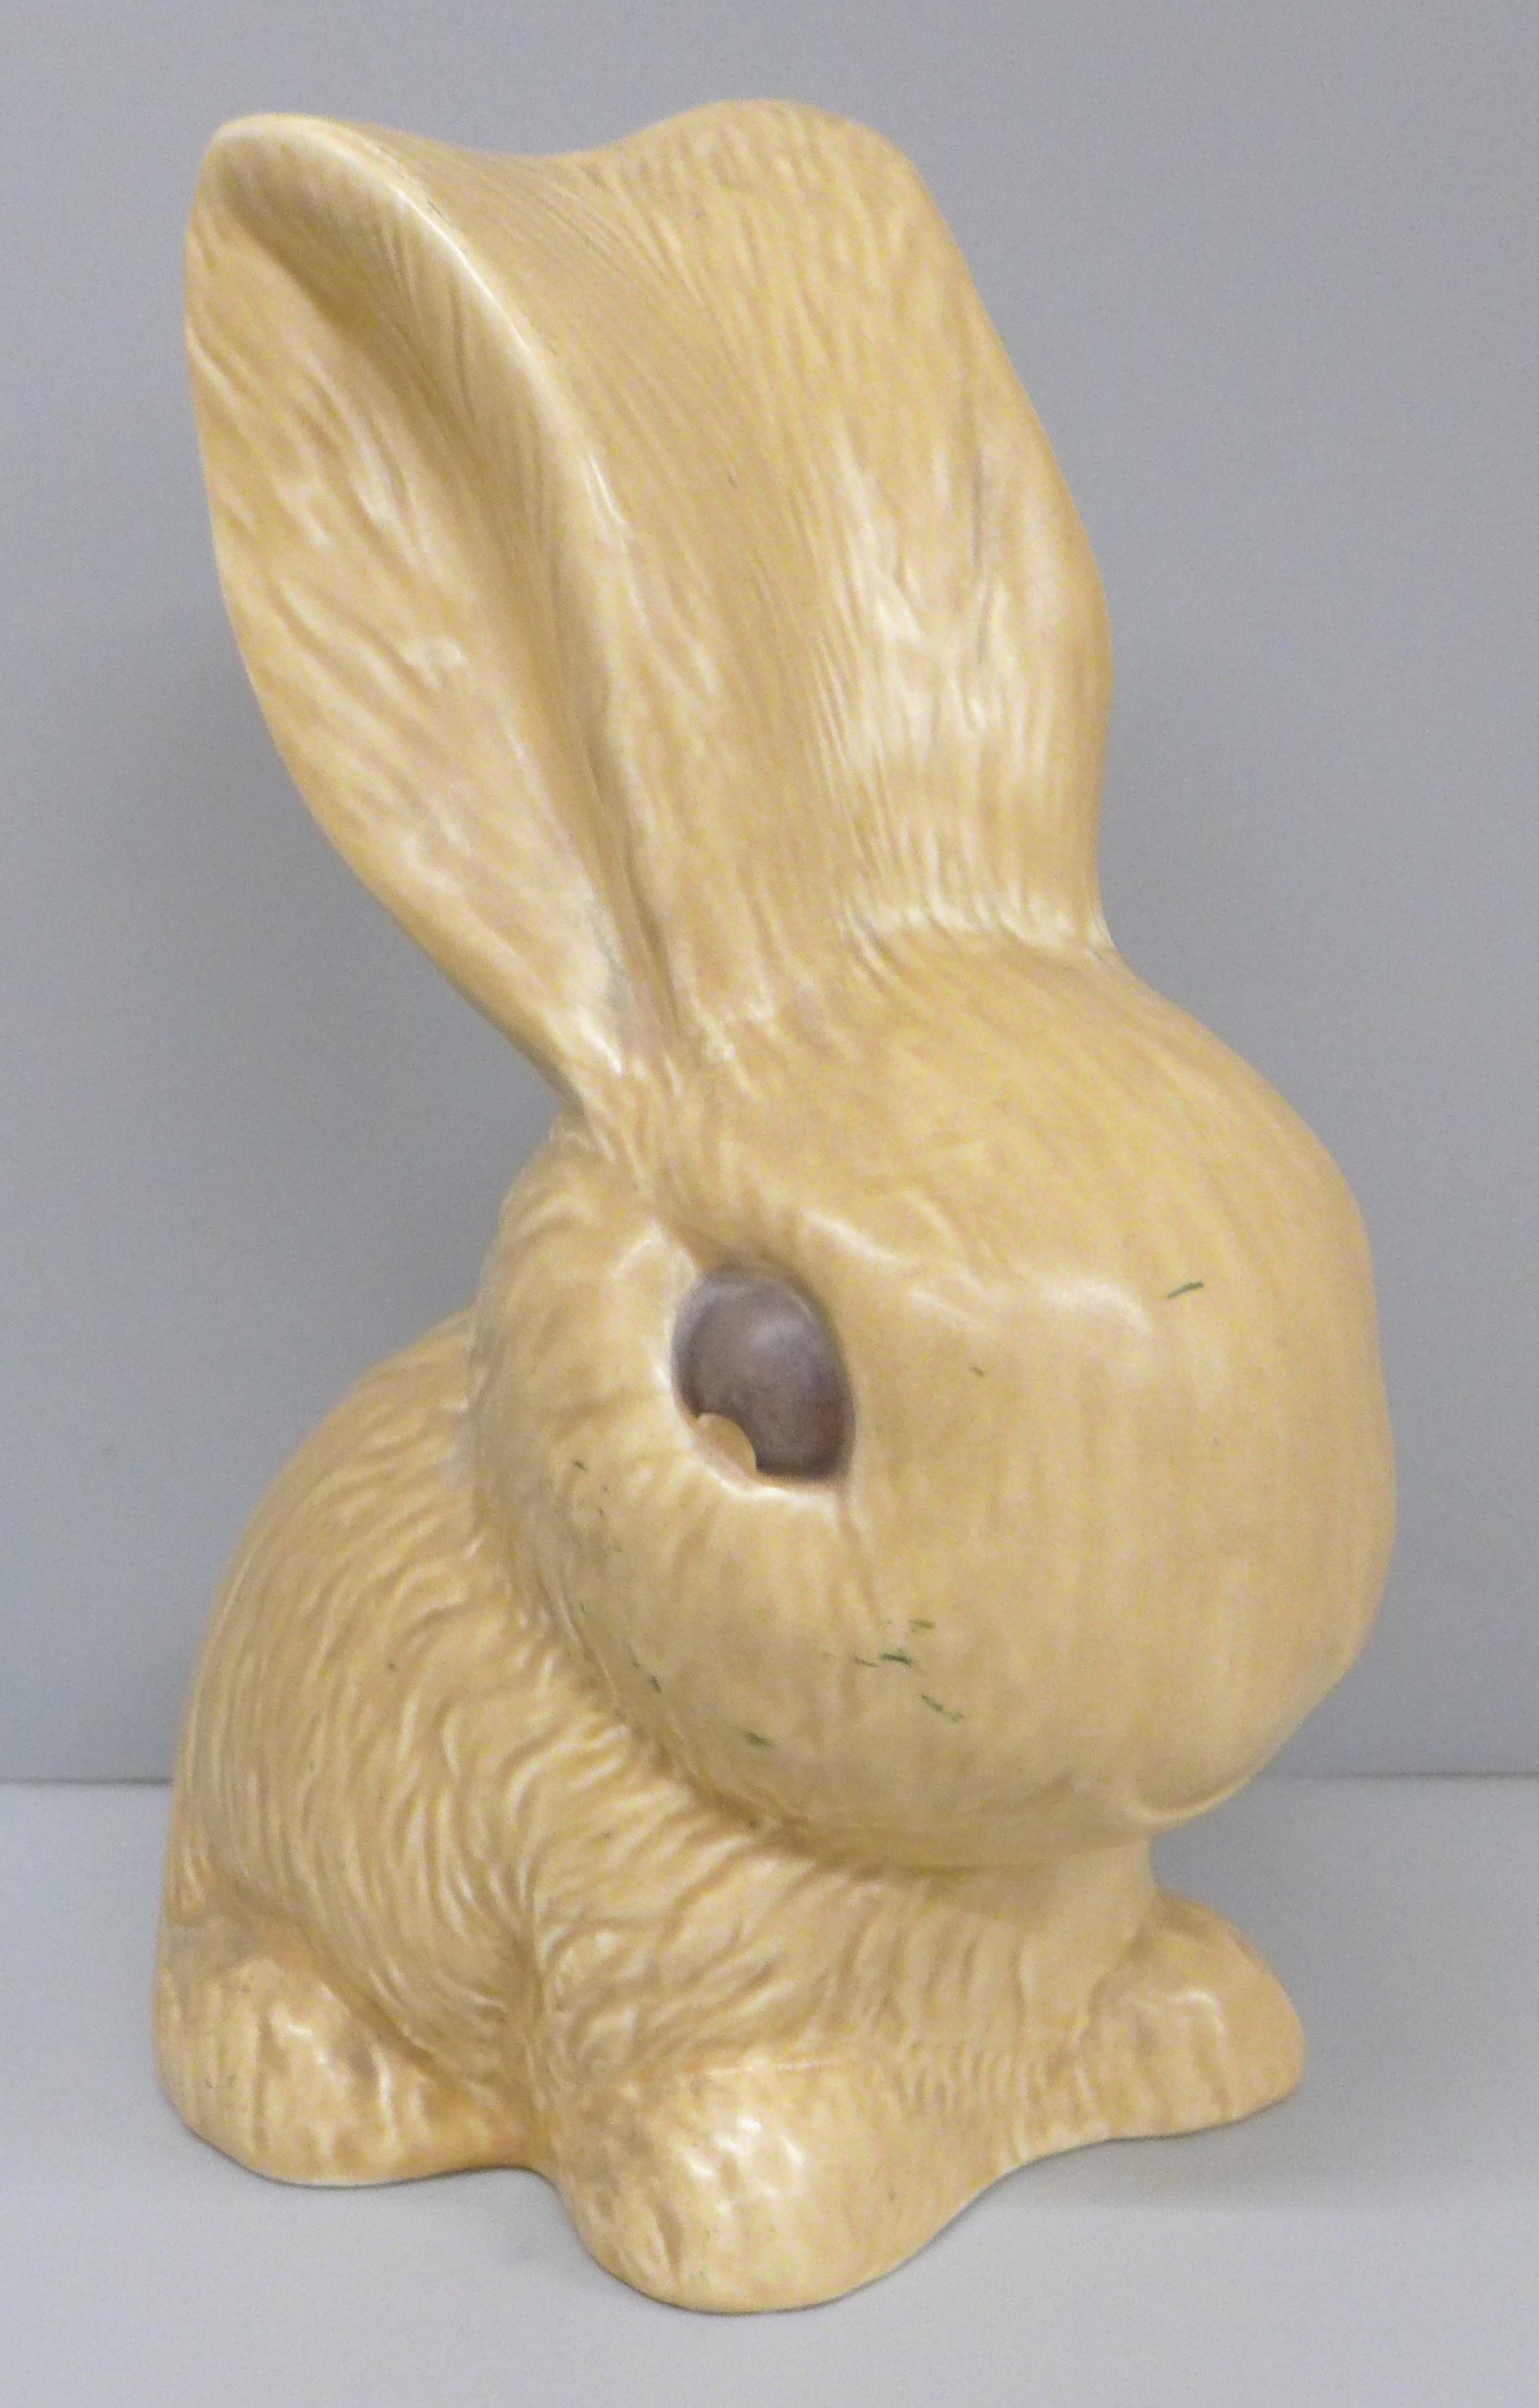 A Sylvac 1028 rabbit, 25cm